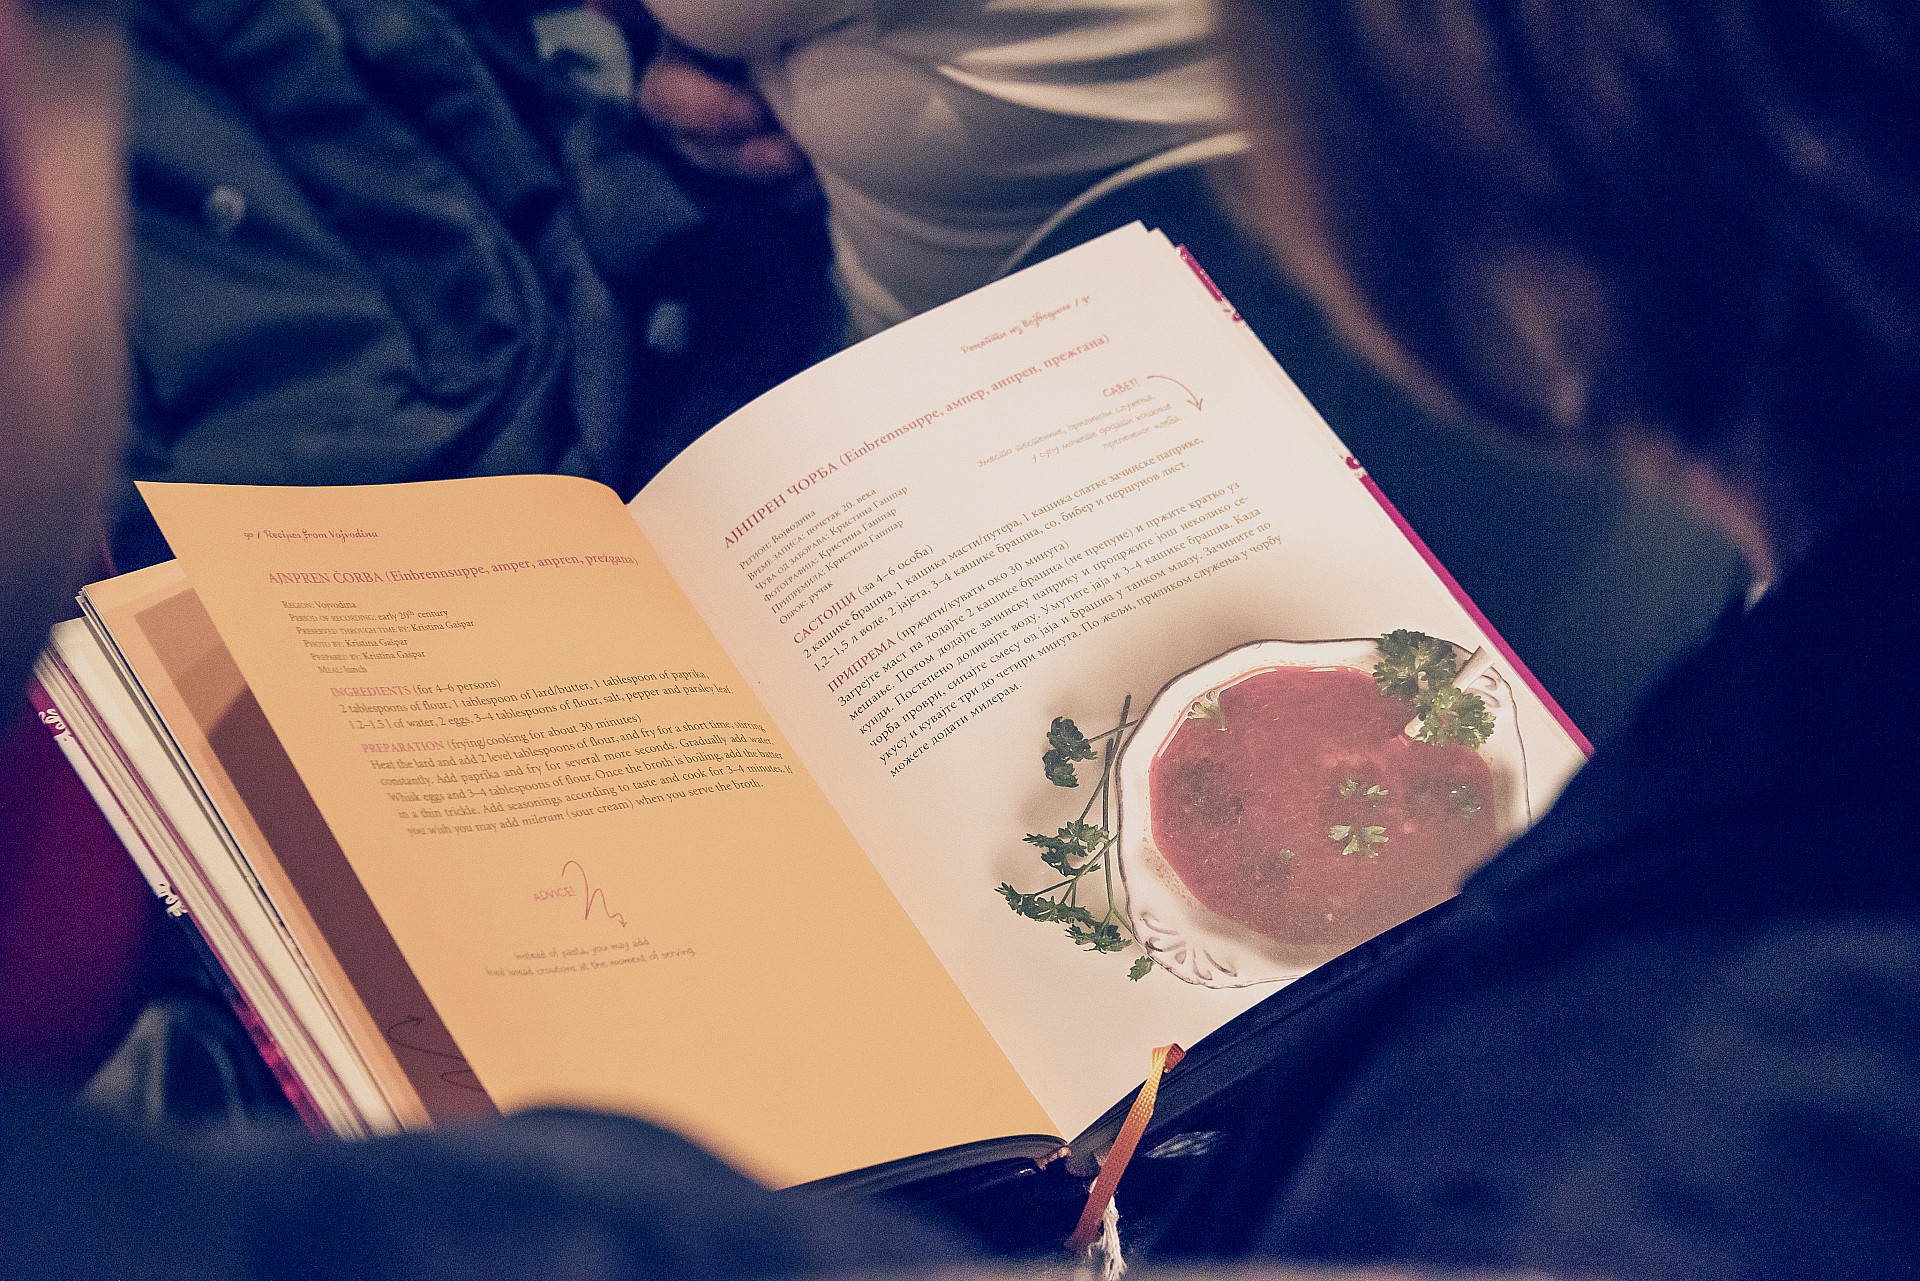 Helfen Sie uns, die zweite Auflage des Buches „Traditionelle Rezepte der serbischen Küche“ zu veröffentlichen.